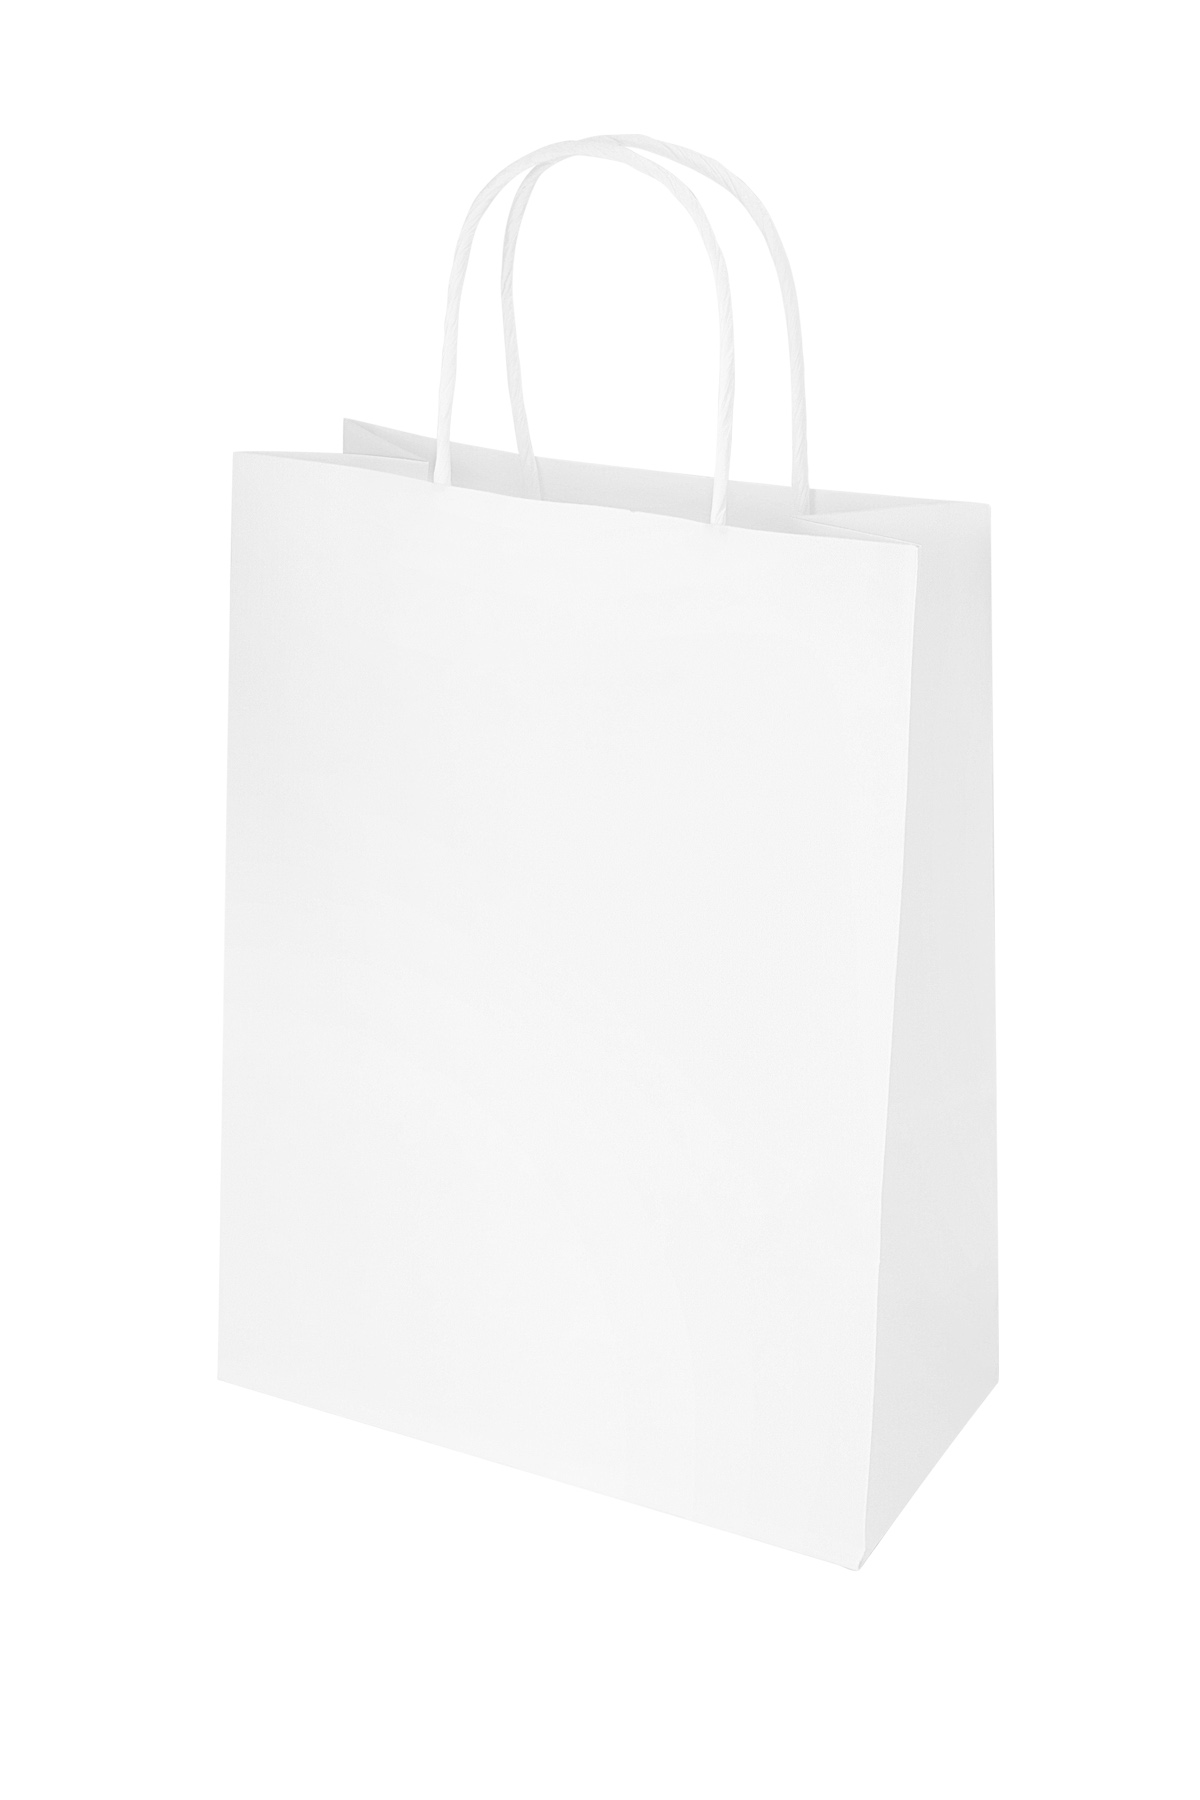 Bags plain 50 pieces large - white Paper h5 